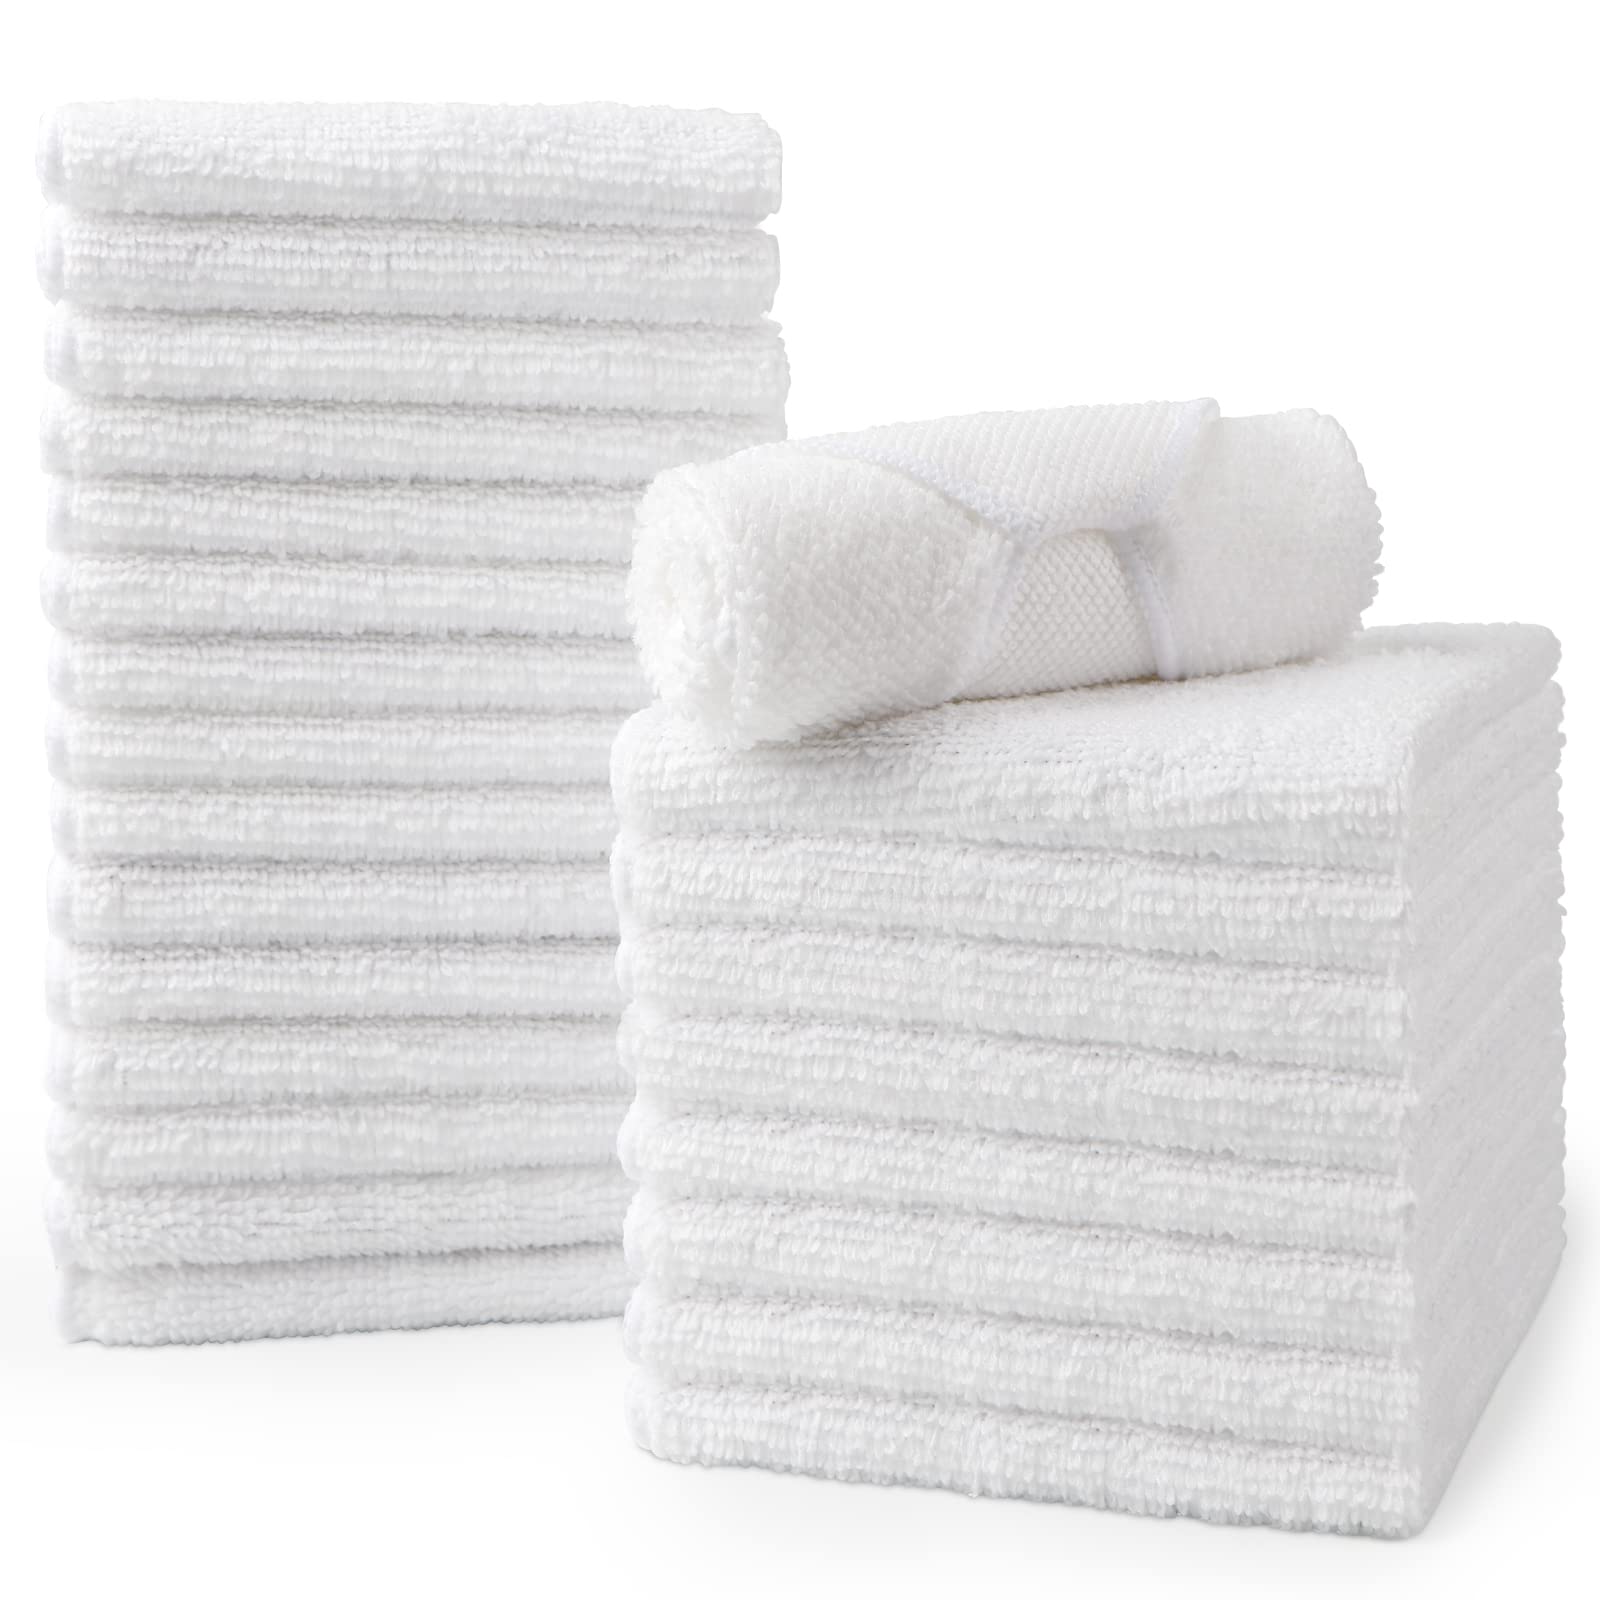 HOMEXCEL Microfiber Washcloths Towel Pack of 24,12